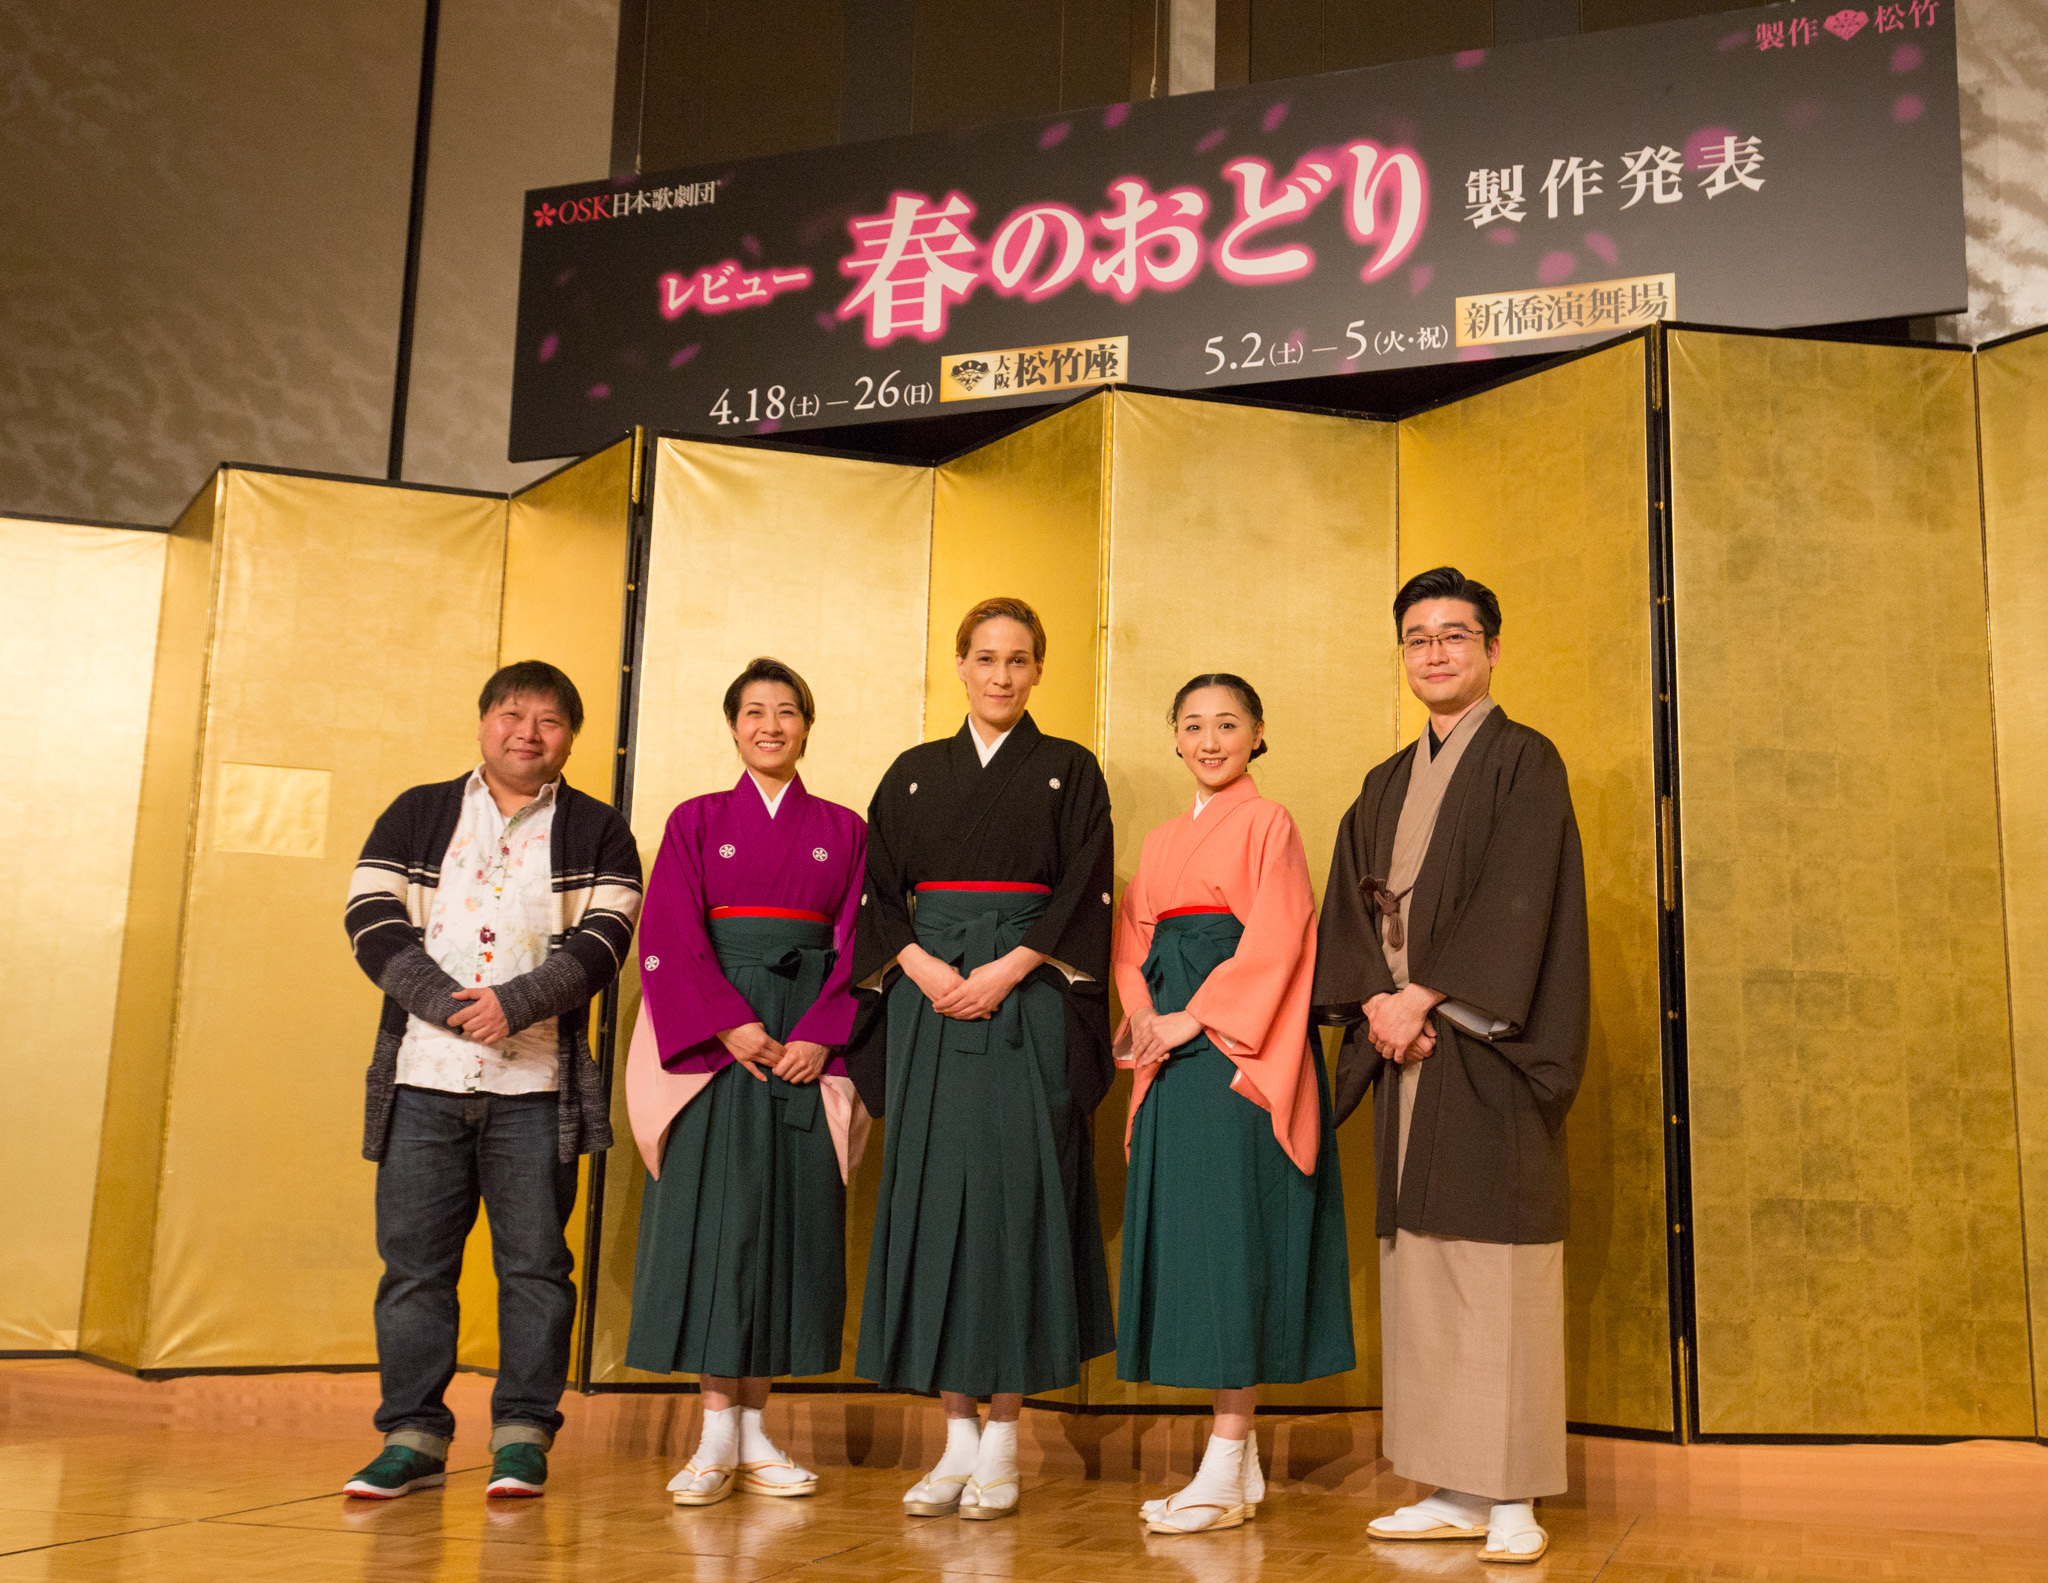 OSK日本歌劇団『レビュー 春のおどり』